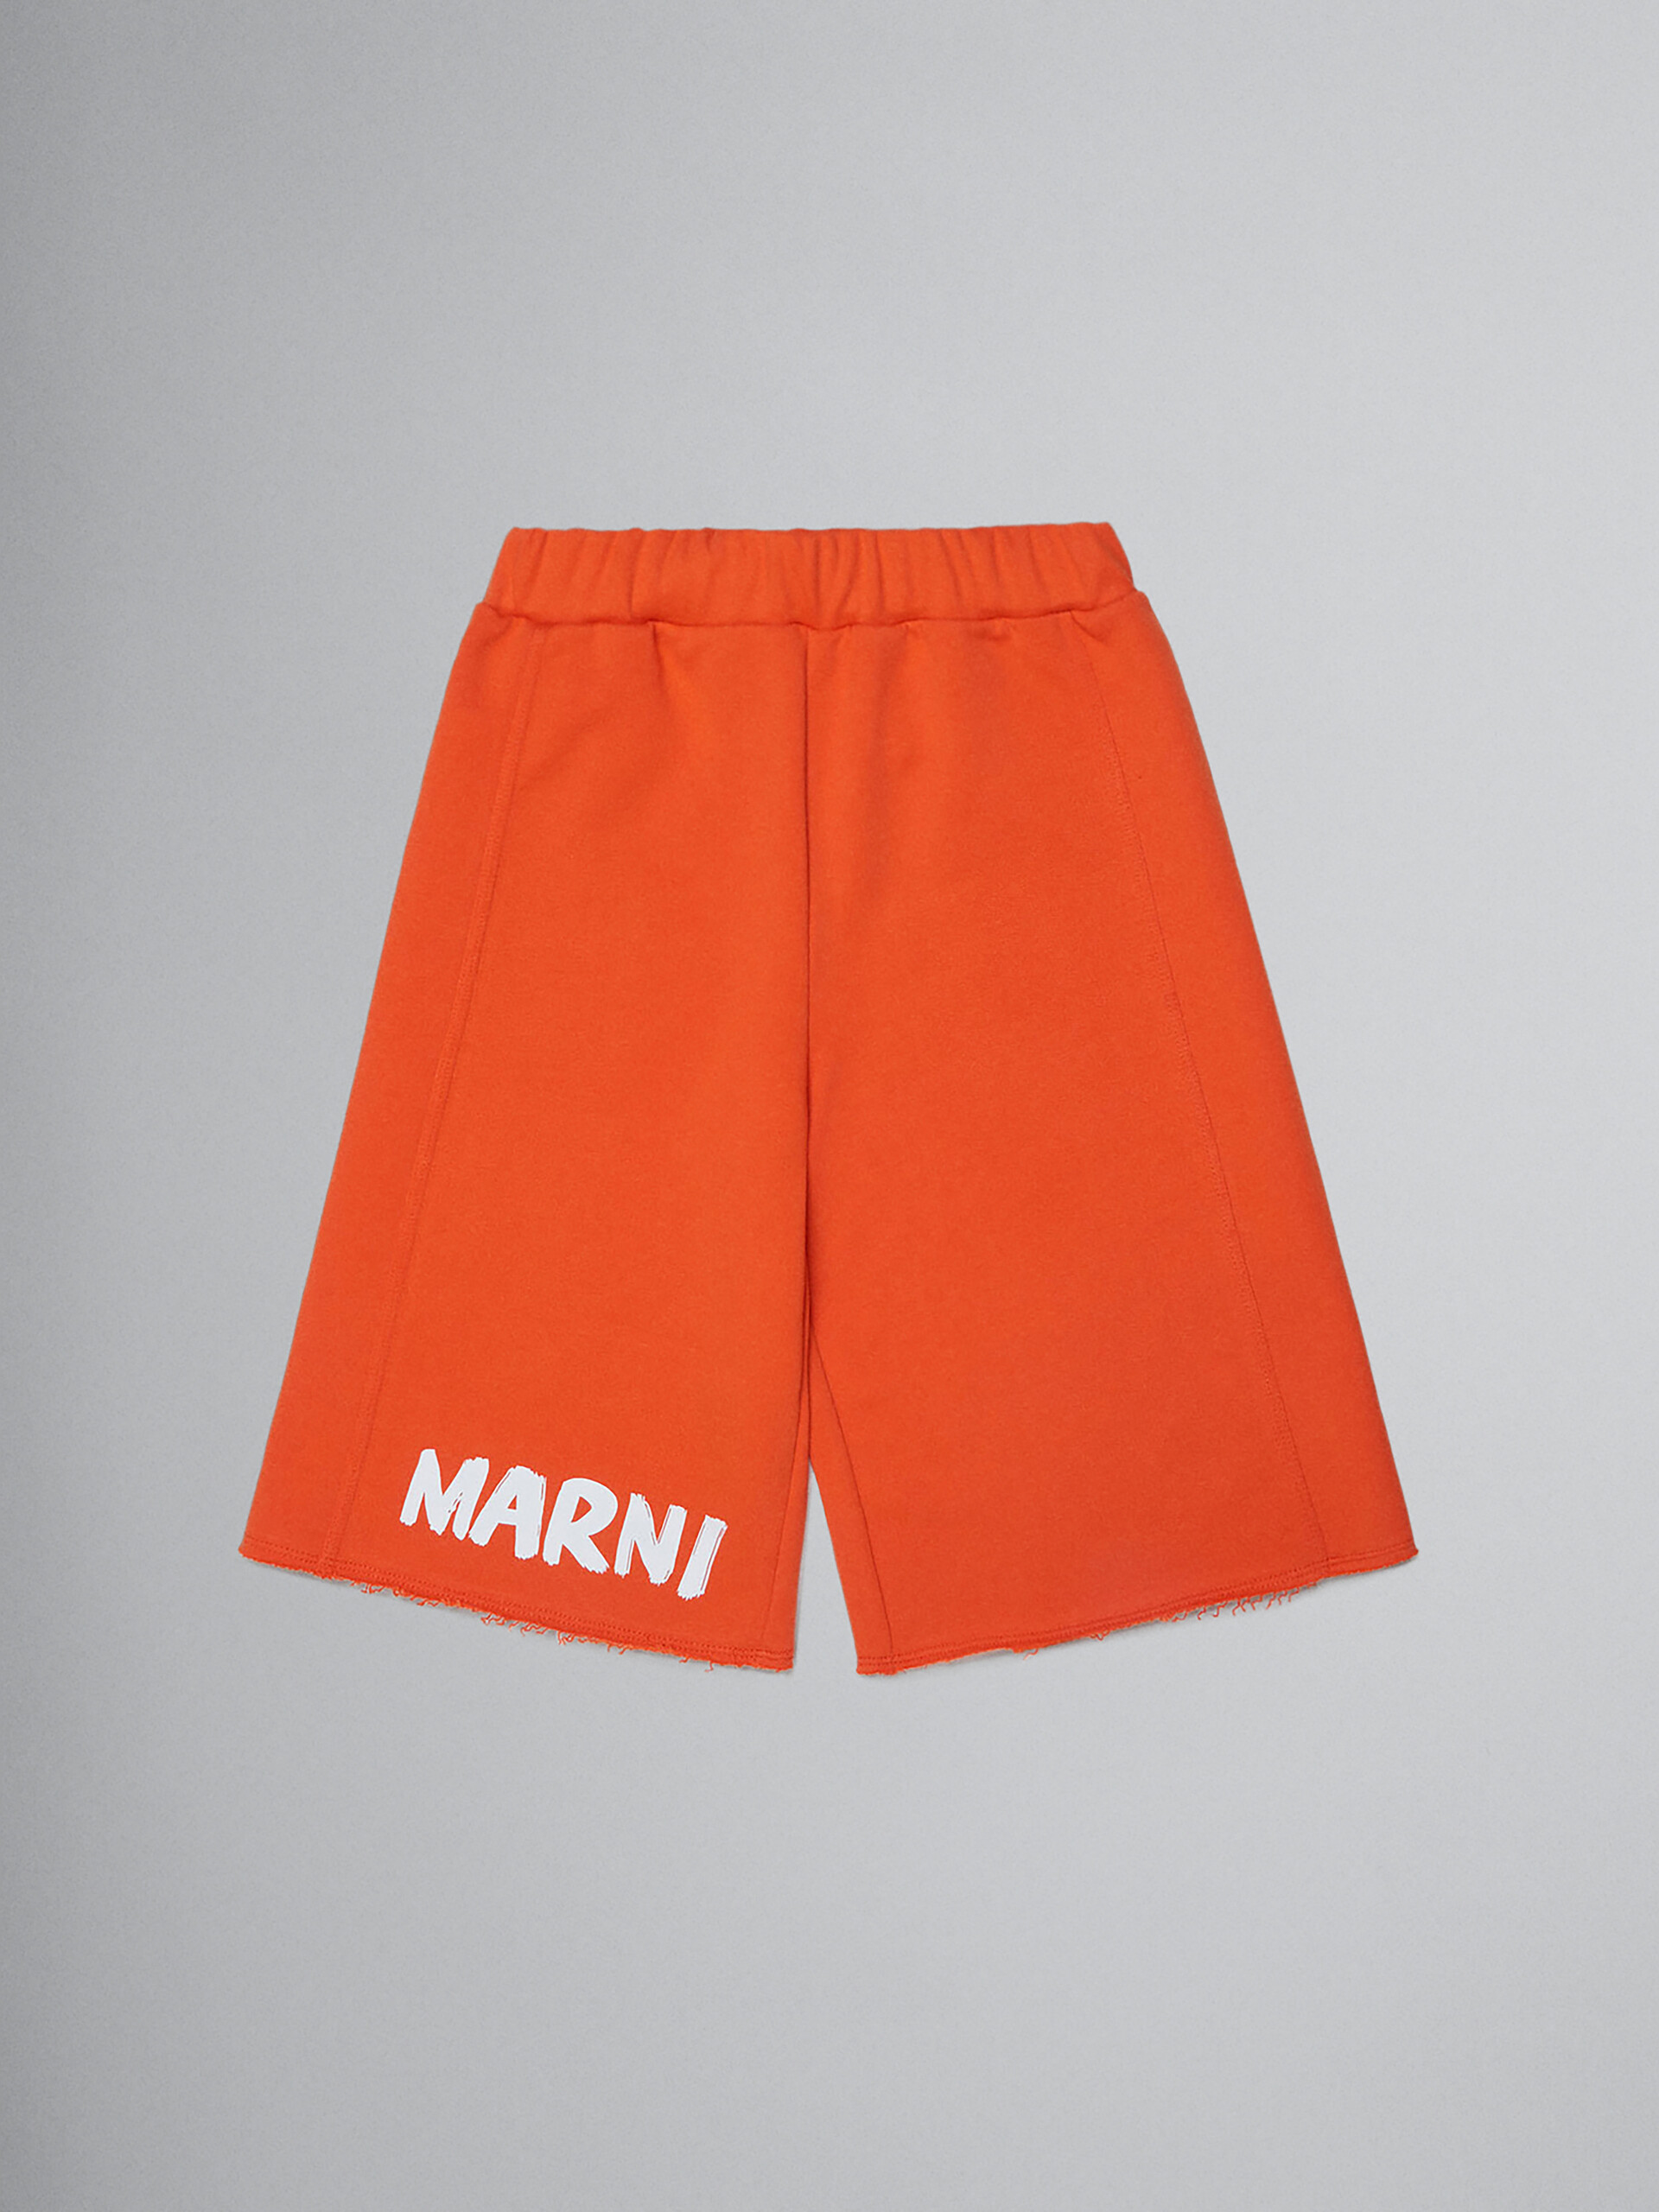 Orange fleece shorts with Brush logo - Pants - Image 1